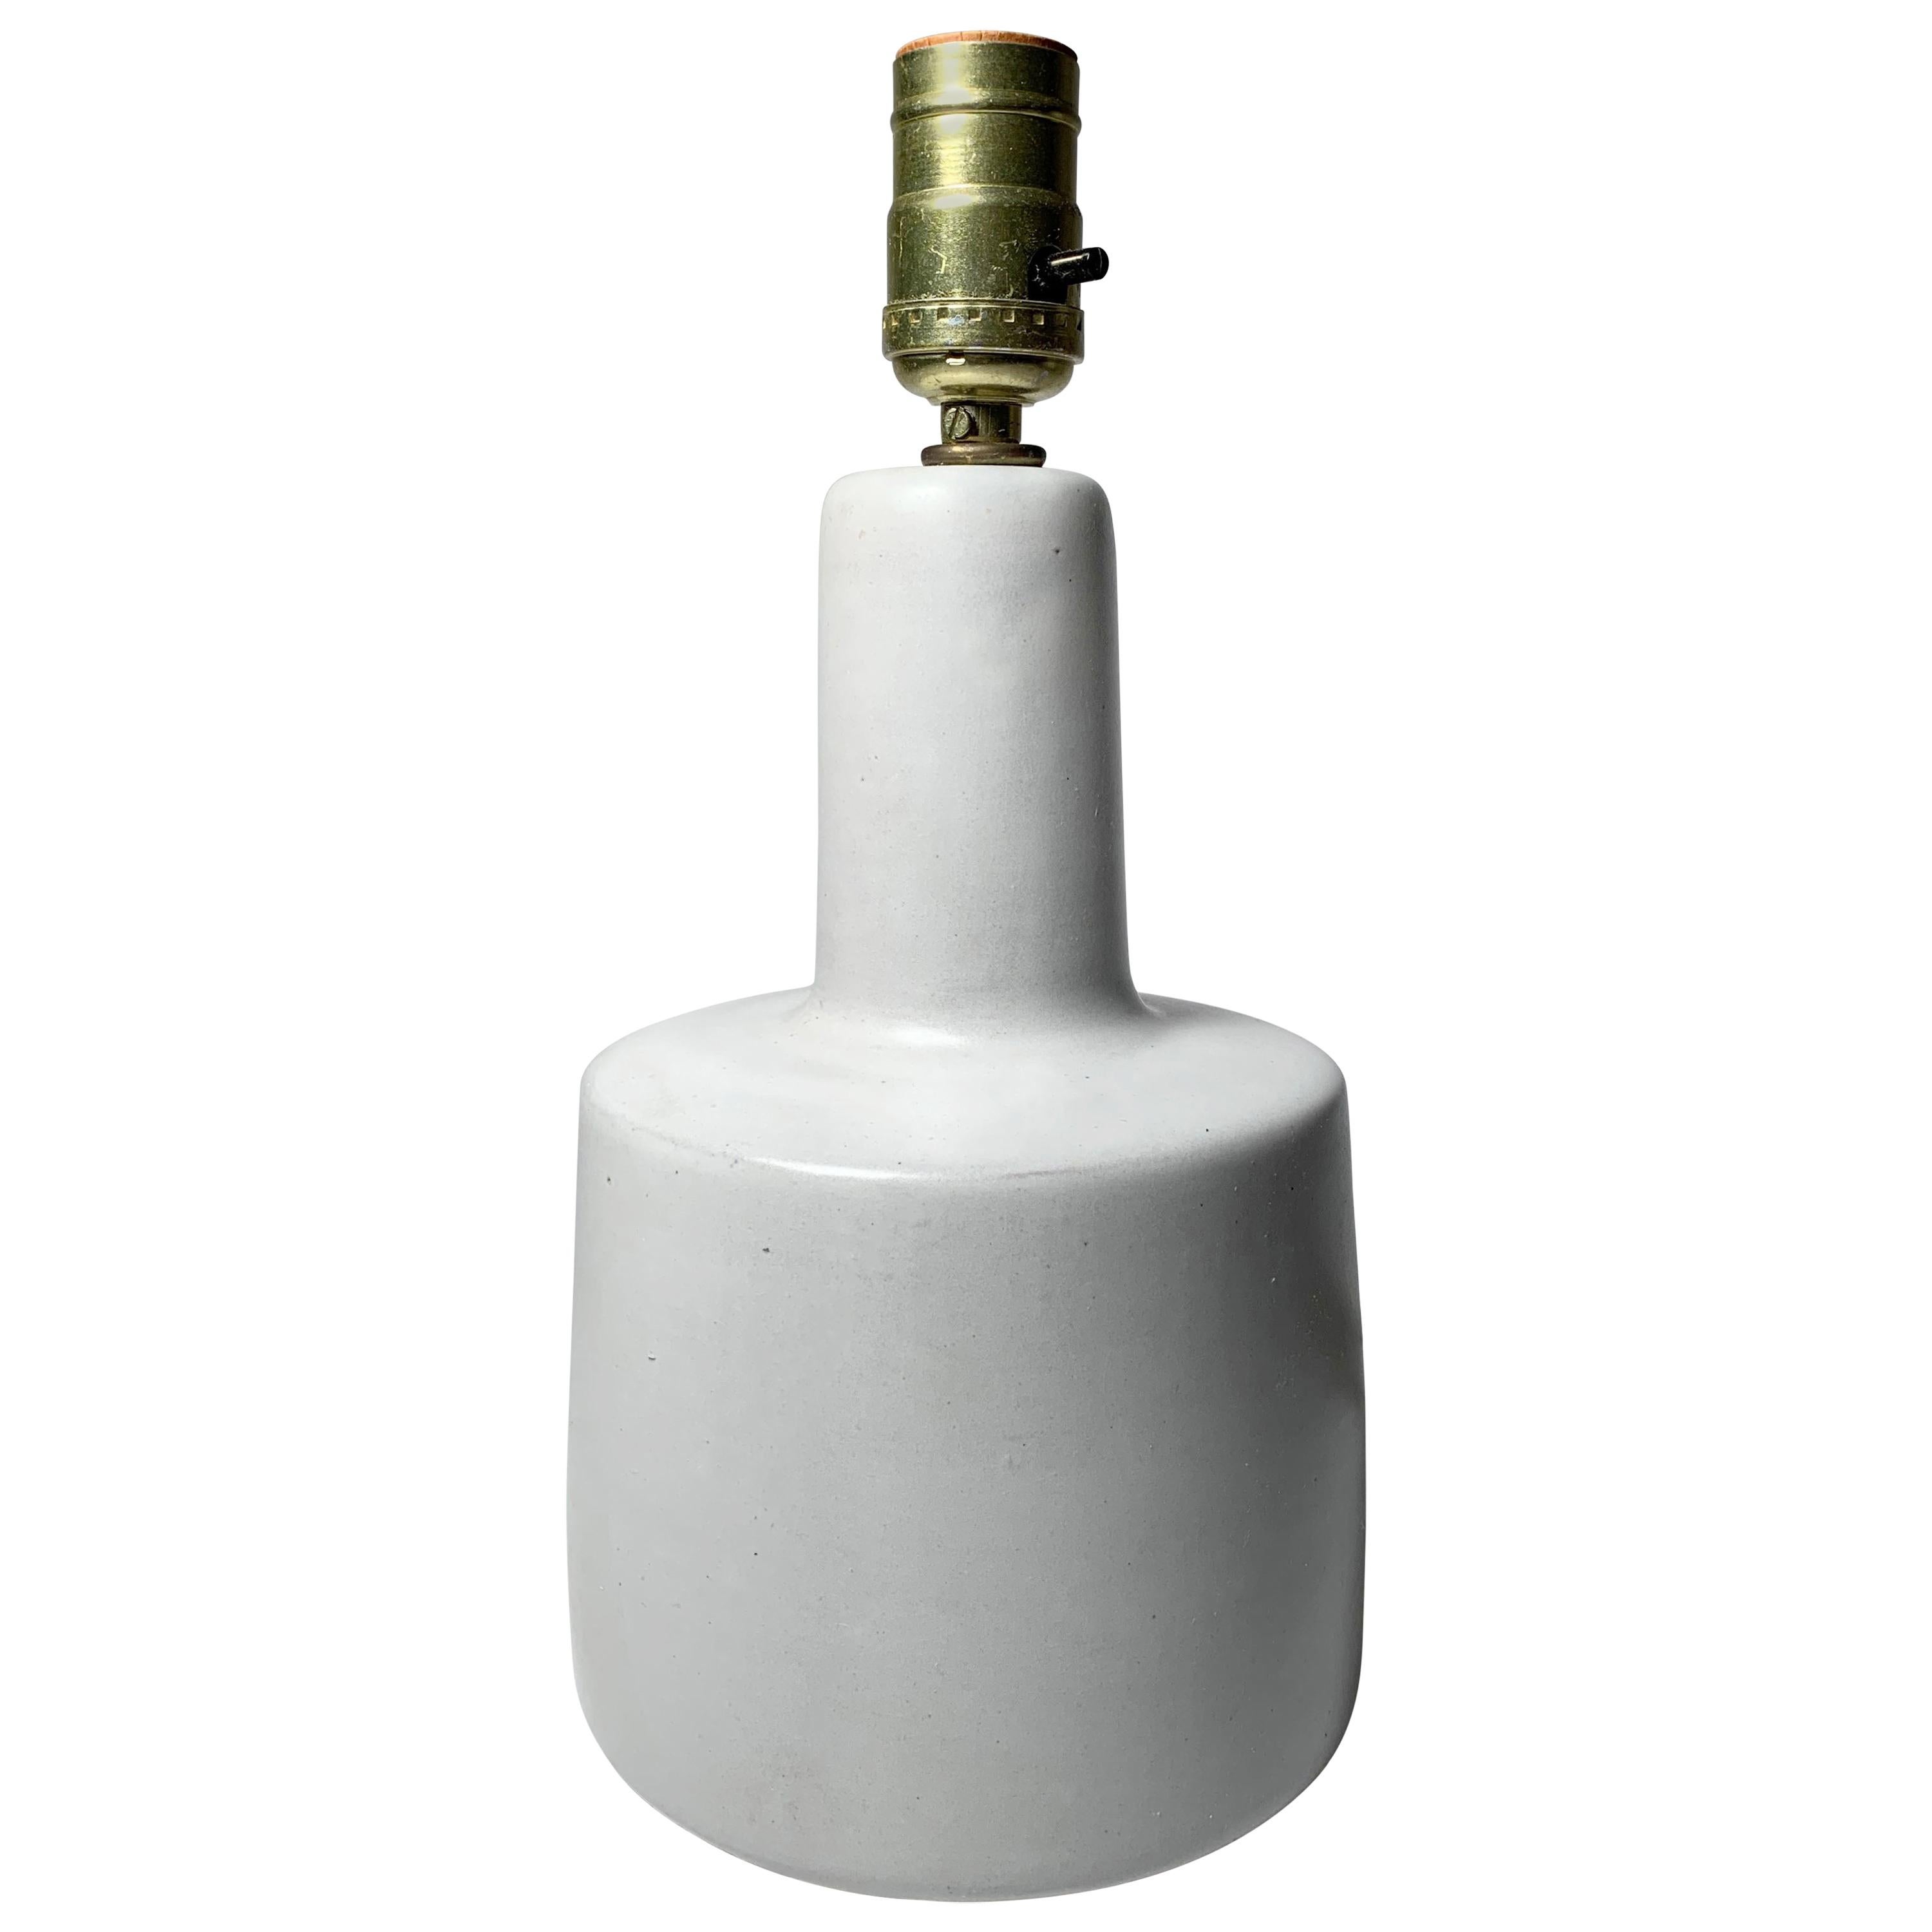 Gordon Martz Ceramic Table Step Lamp in White